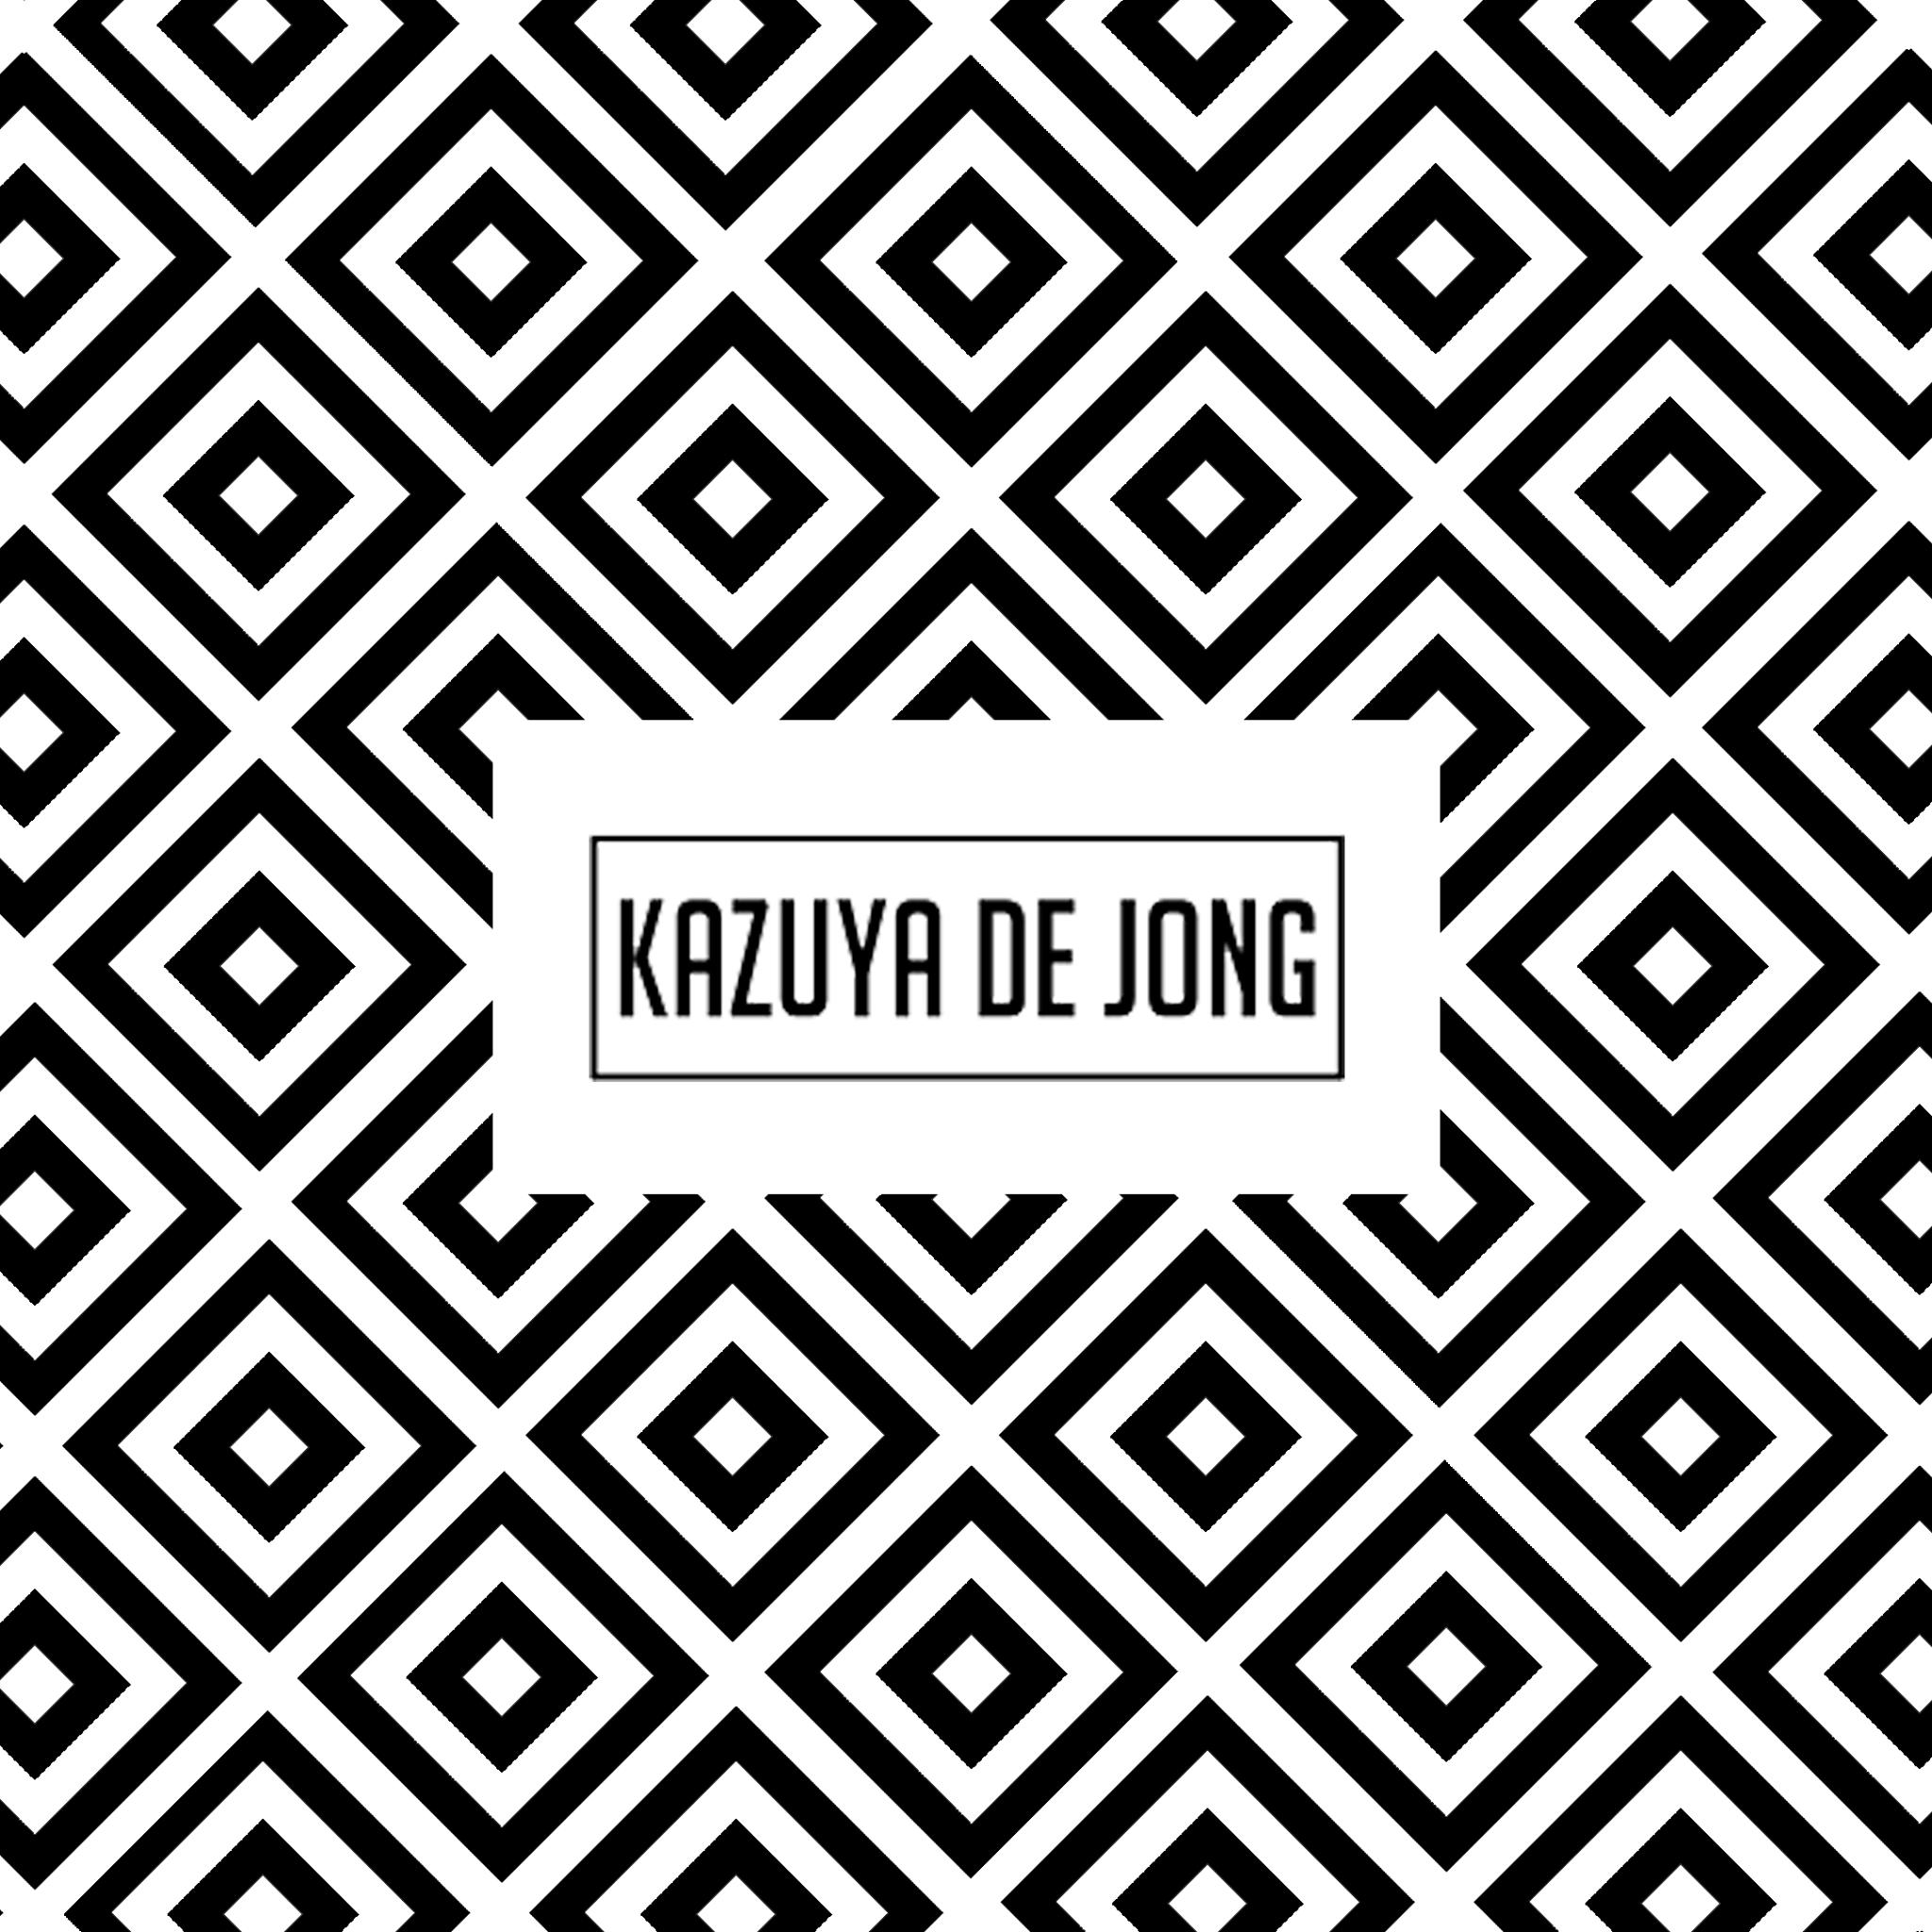 Kazuya de Jong